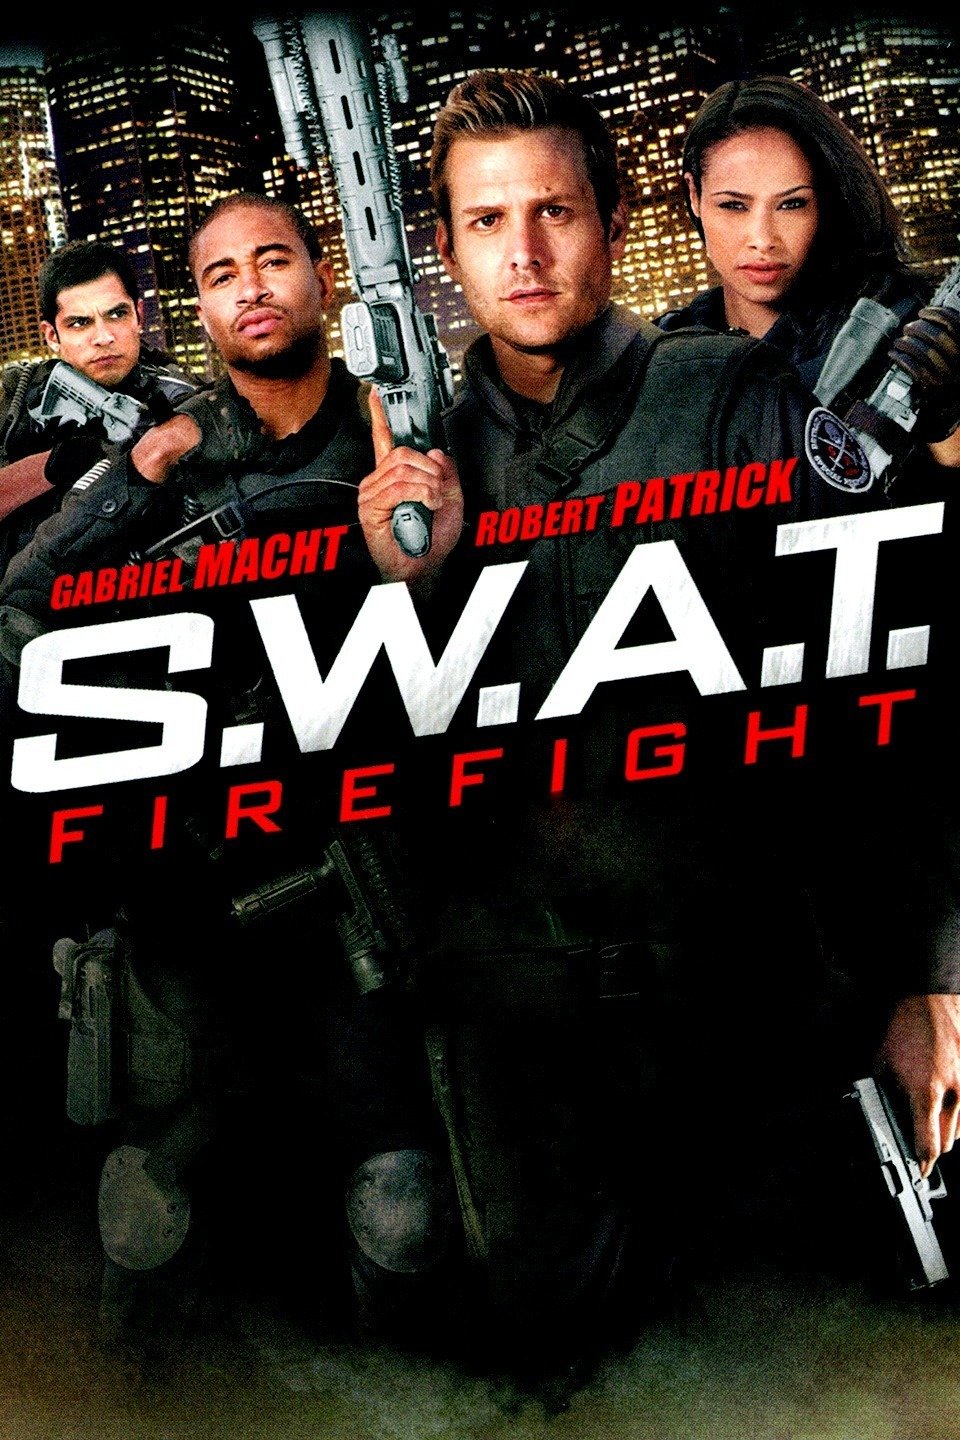 Swat firefight